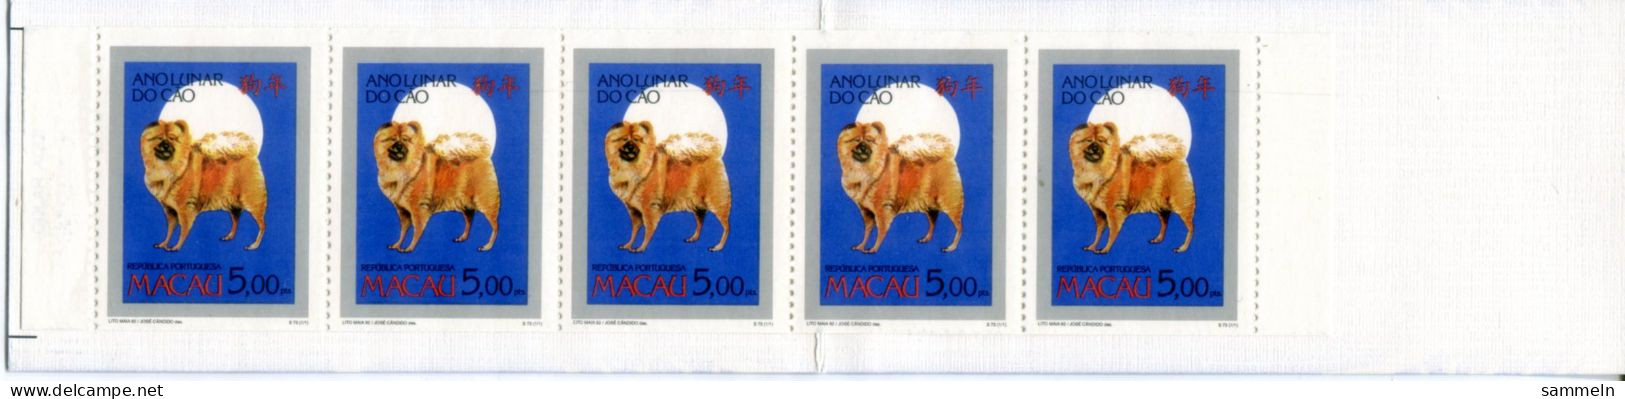 MACAO 746 C MH Mnh - Chinesisches Jahr Des Hundes, Chinese Year Of The Dog, Année Chinoise Du Chien - MACAU - Markenheftchen